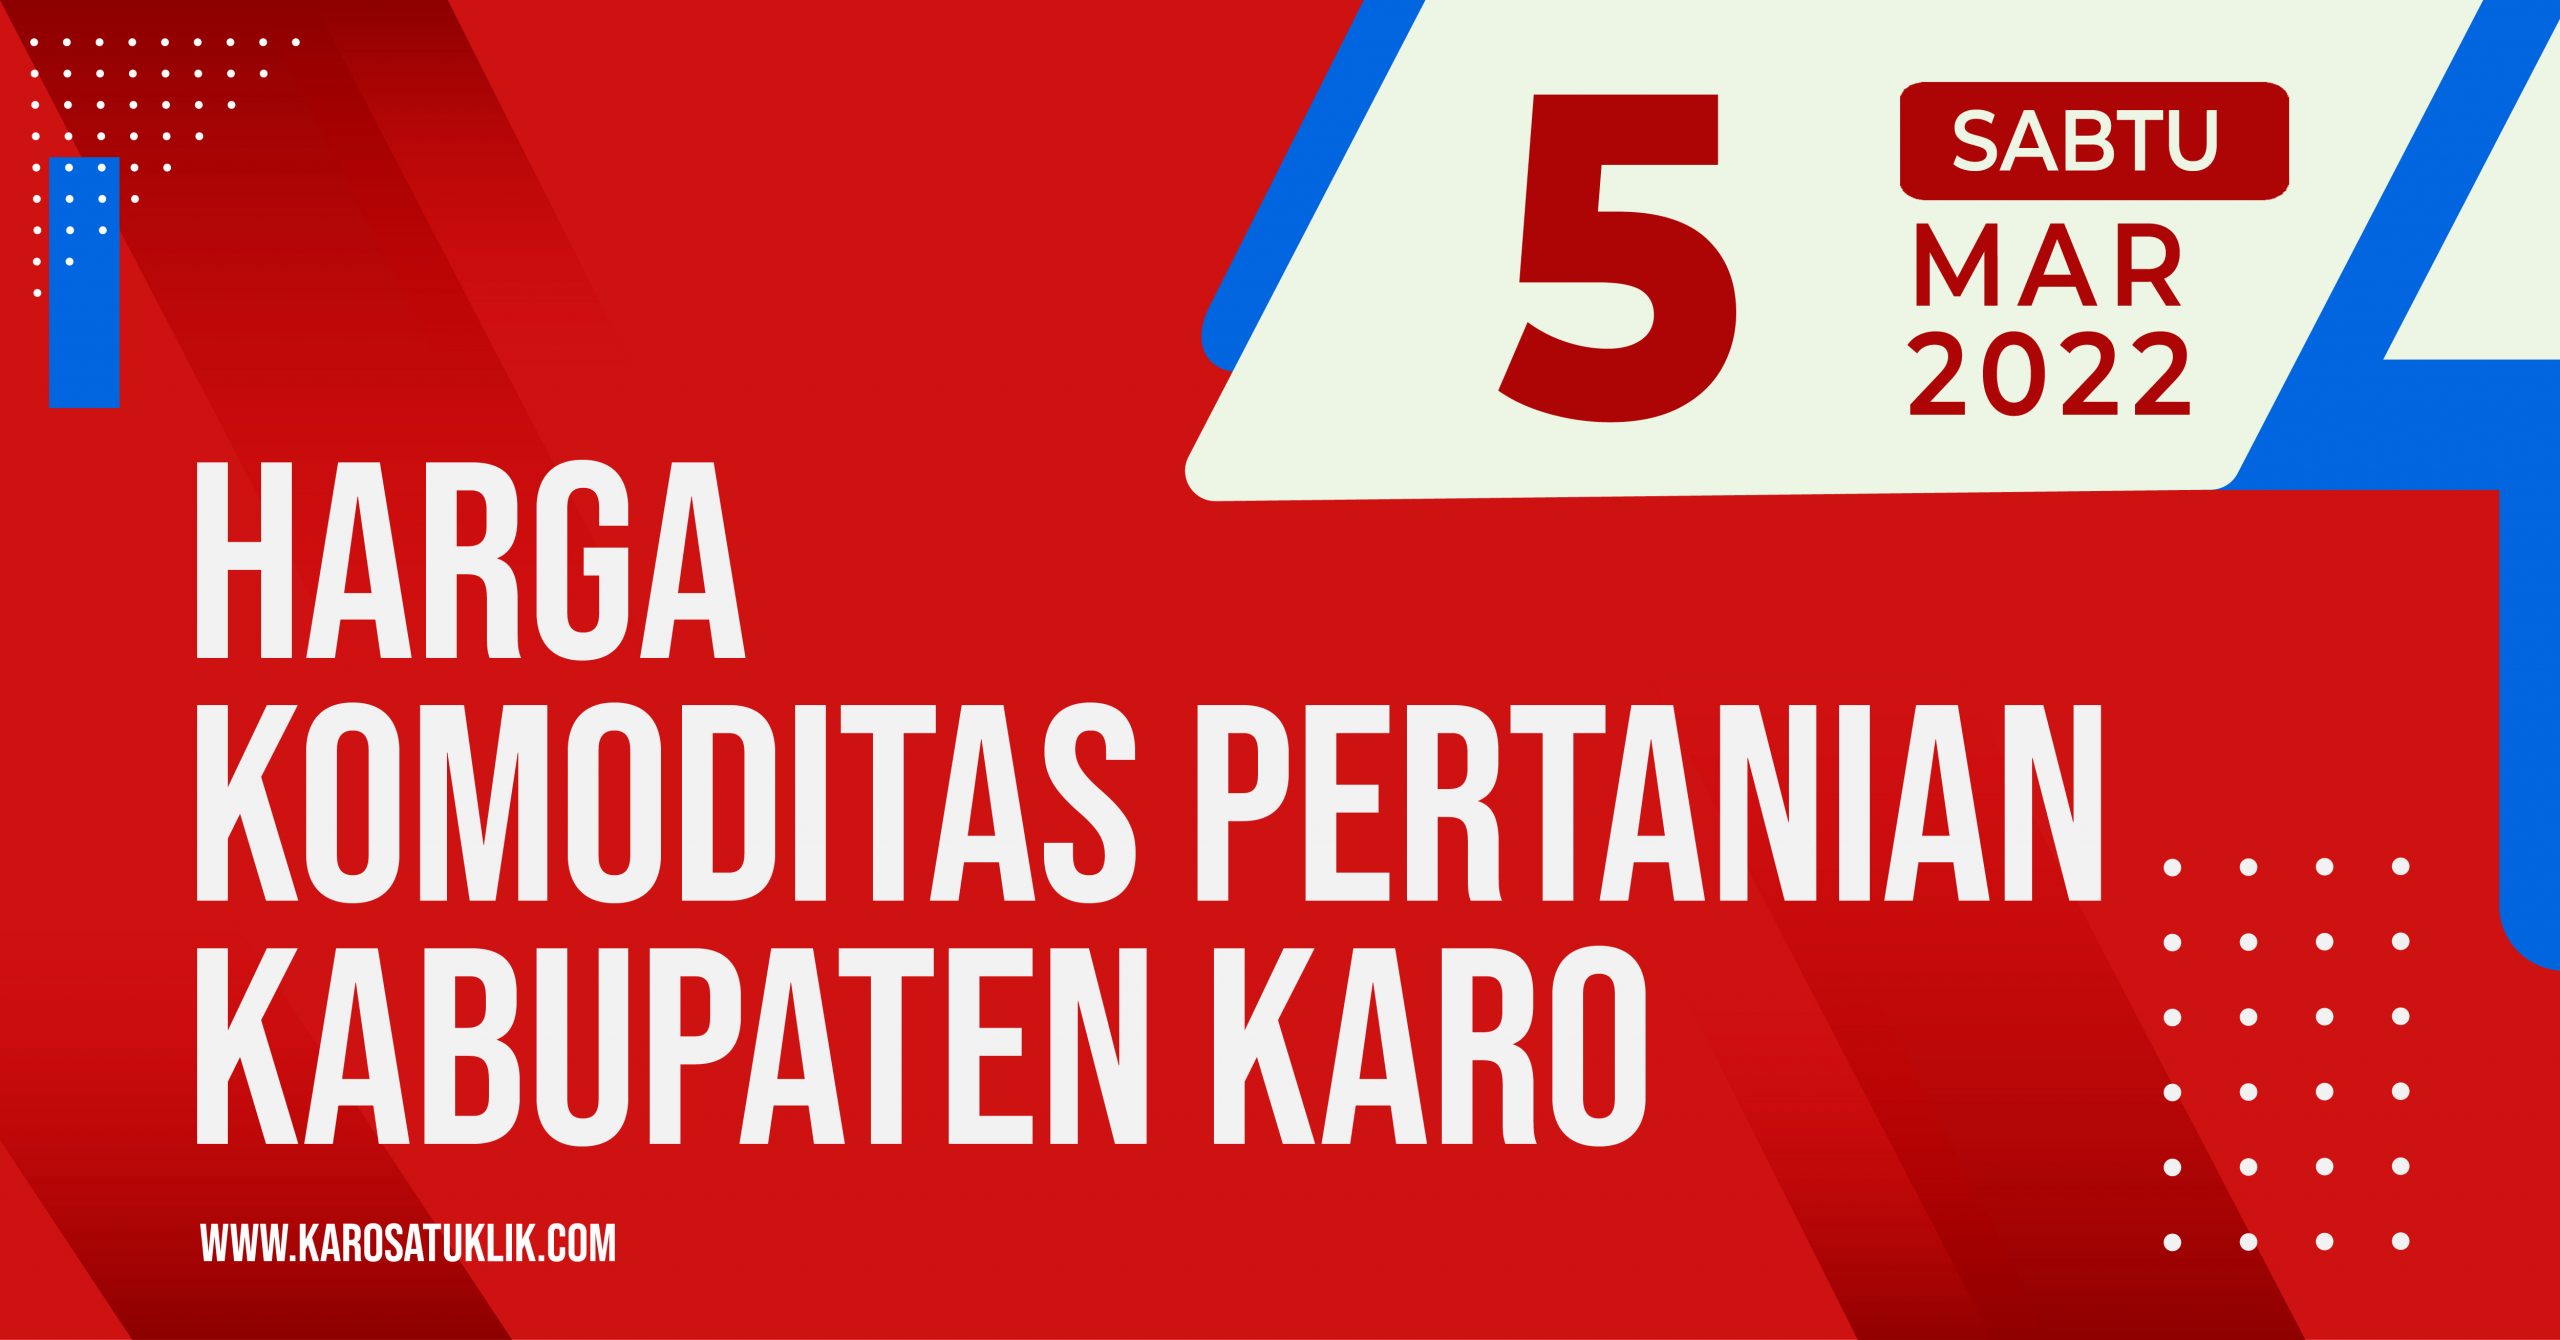 Daftar Harga Komoditas Pertanian Kabupaten Karo, 5 Maret 2022